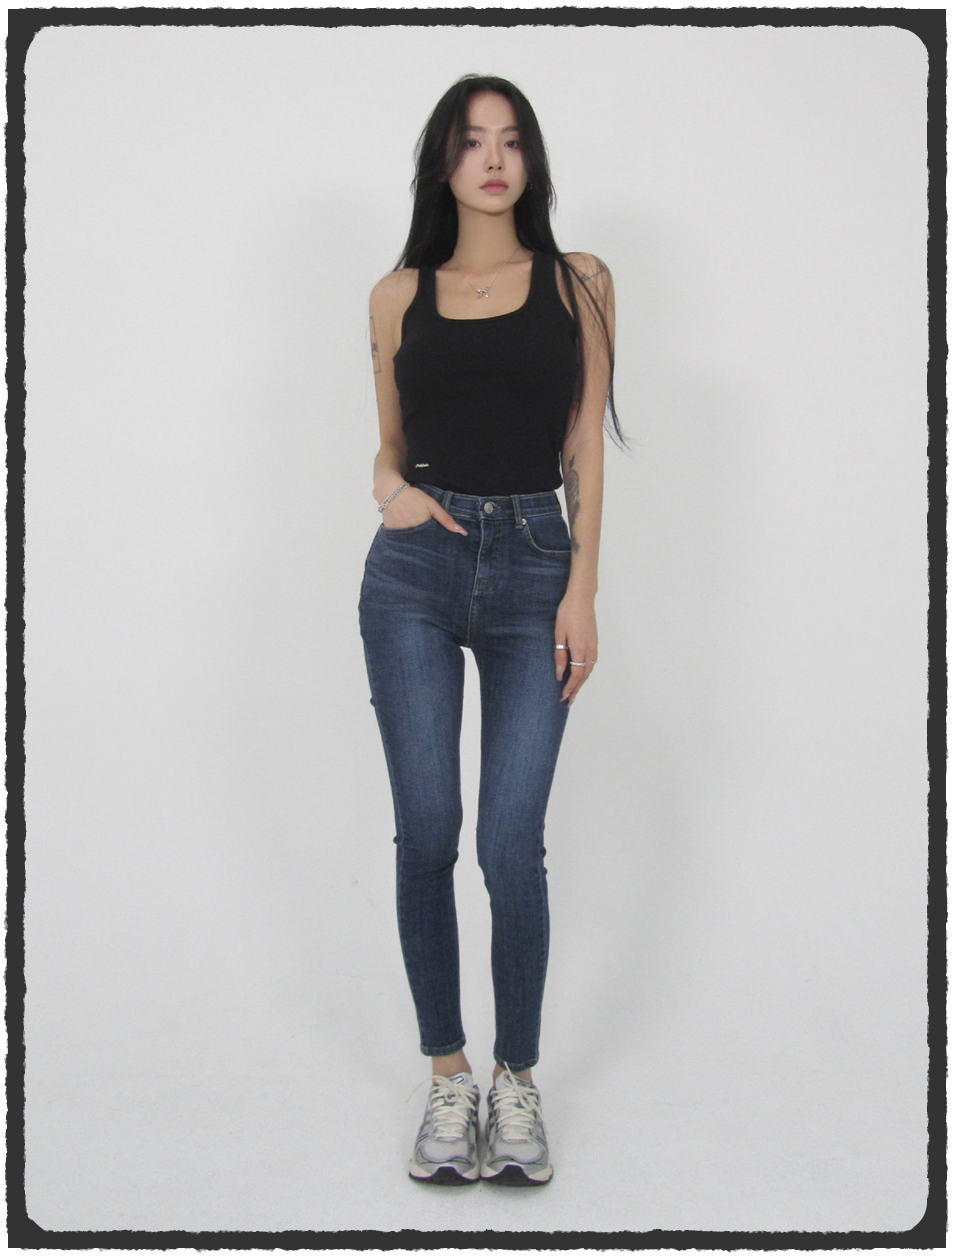 Basic Skinny Jean